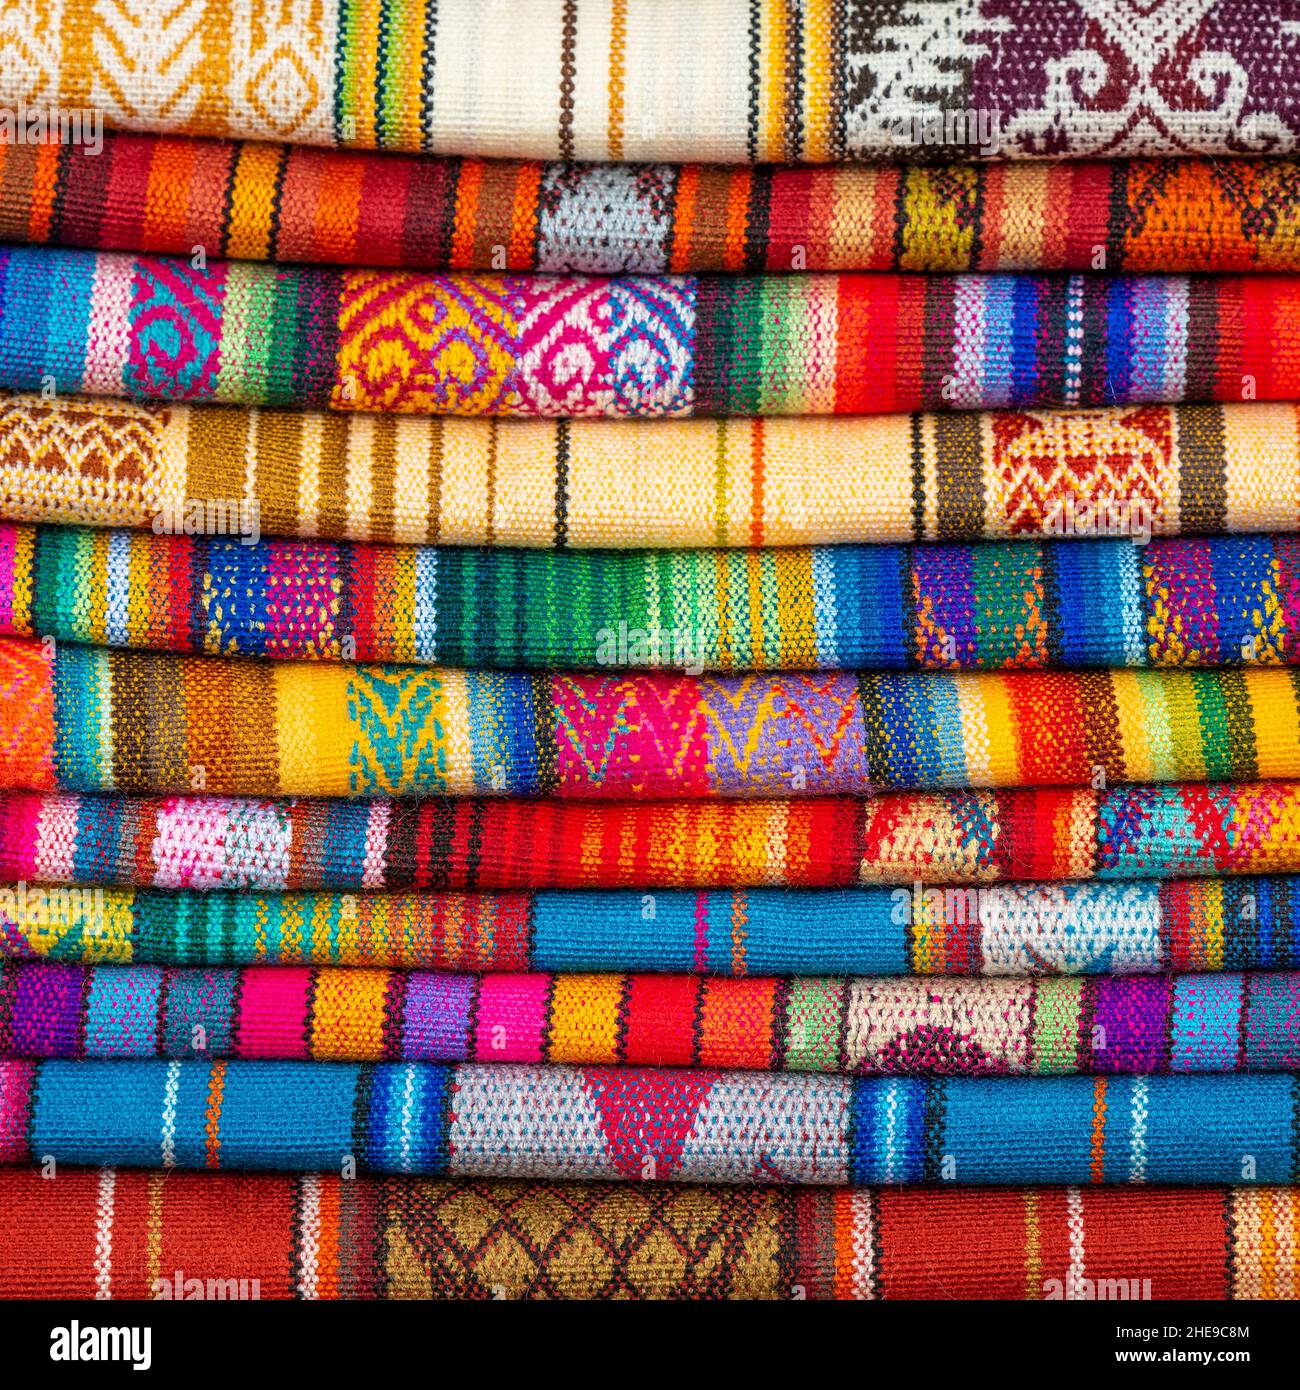 Stapel von bunten einheimischen Anden-Textilien oder -Stoffen, Otavalo-Markt in der Nähe von Quito, Ecuador. Stockfoto